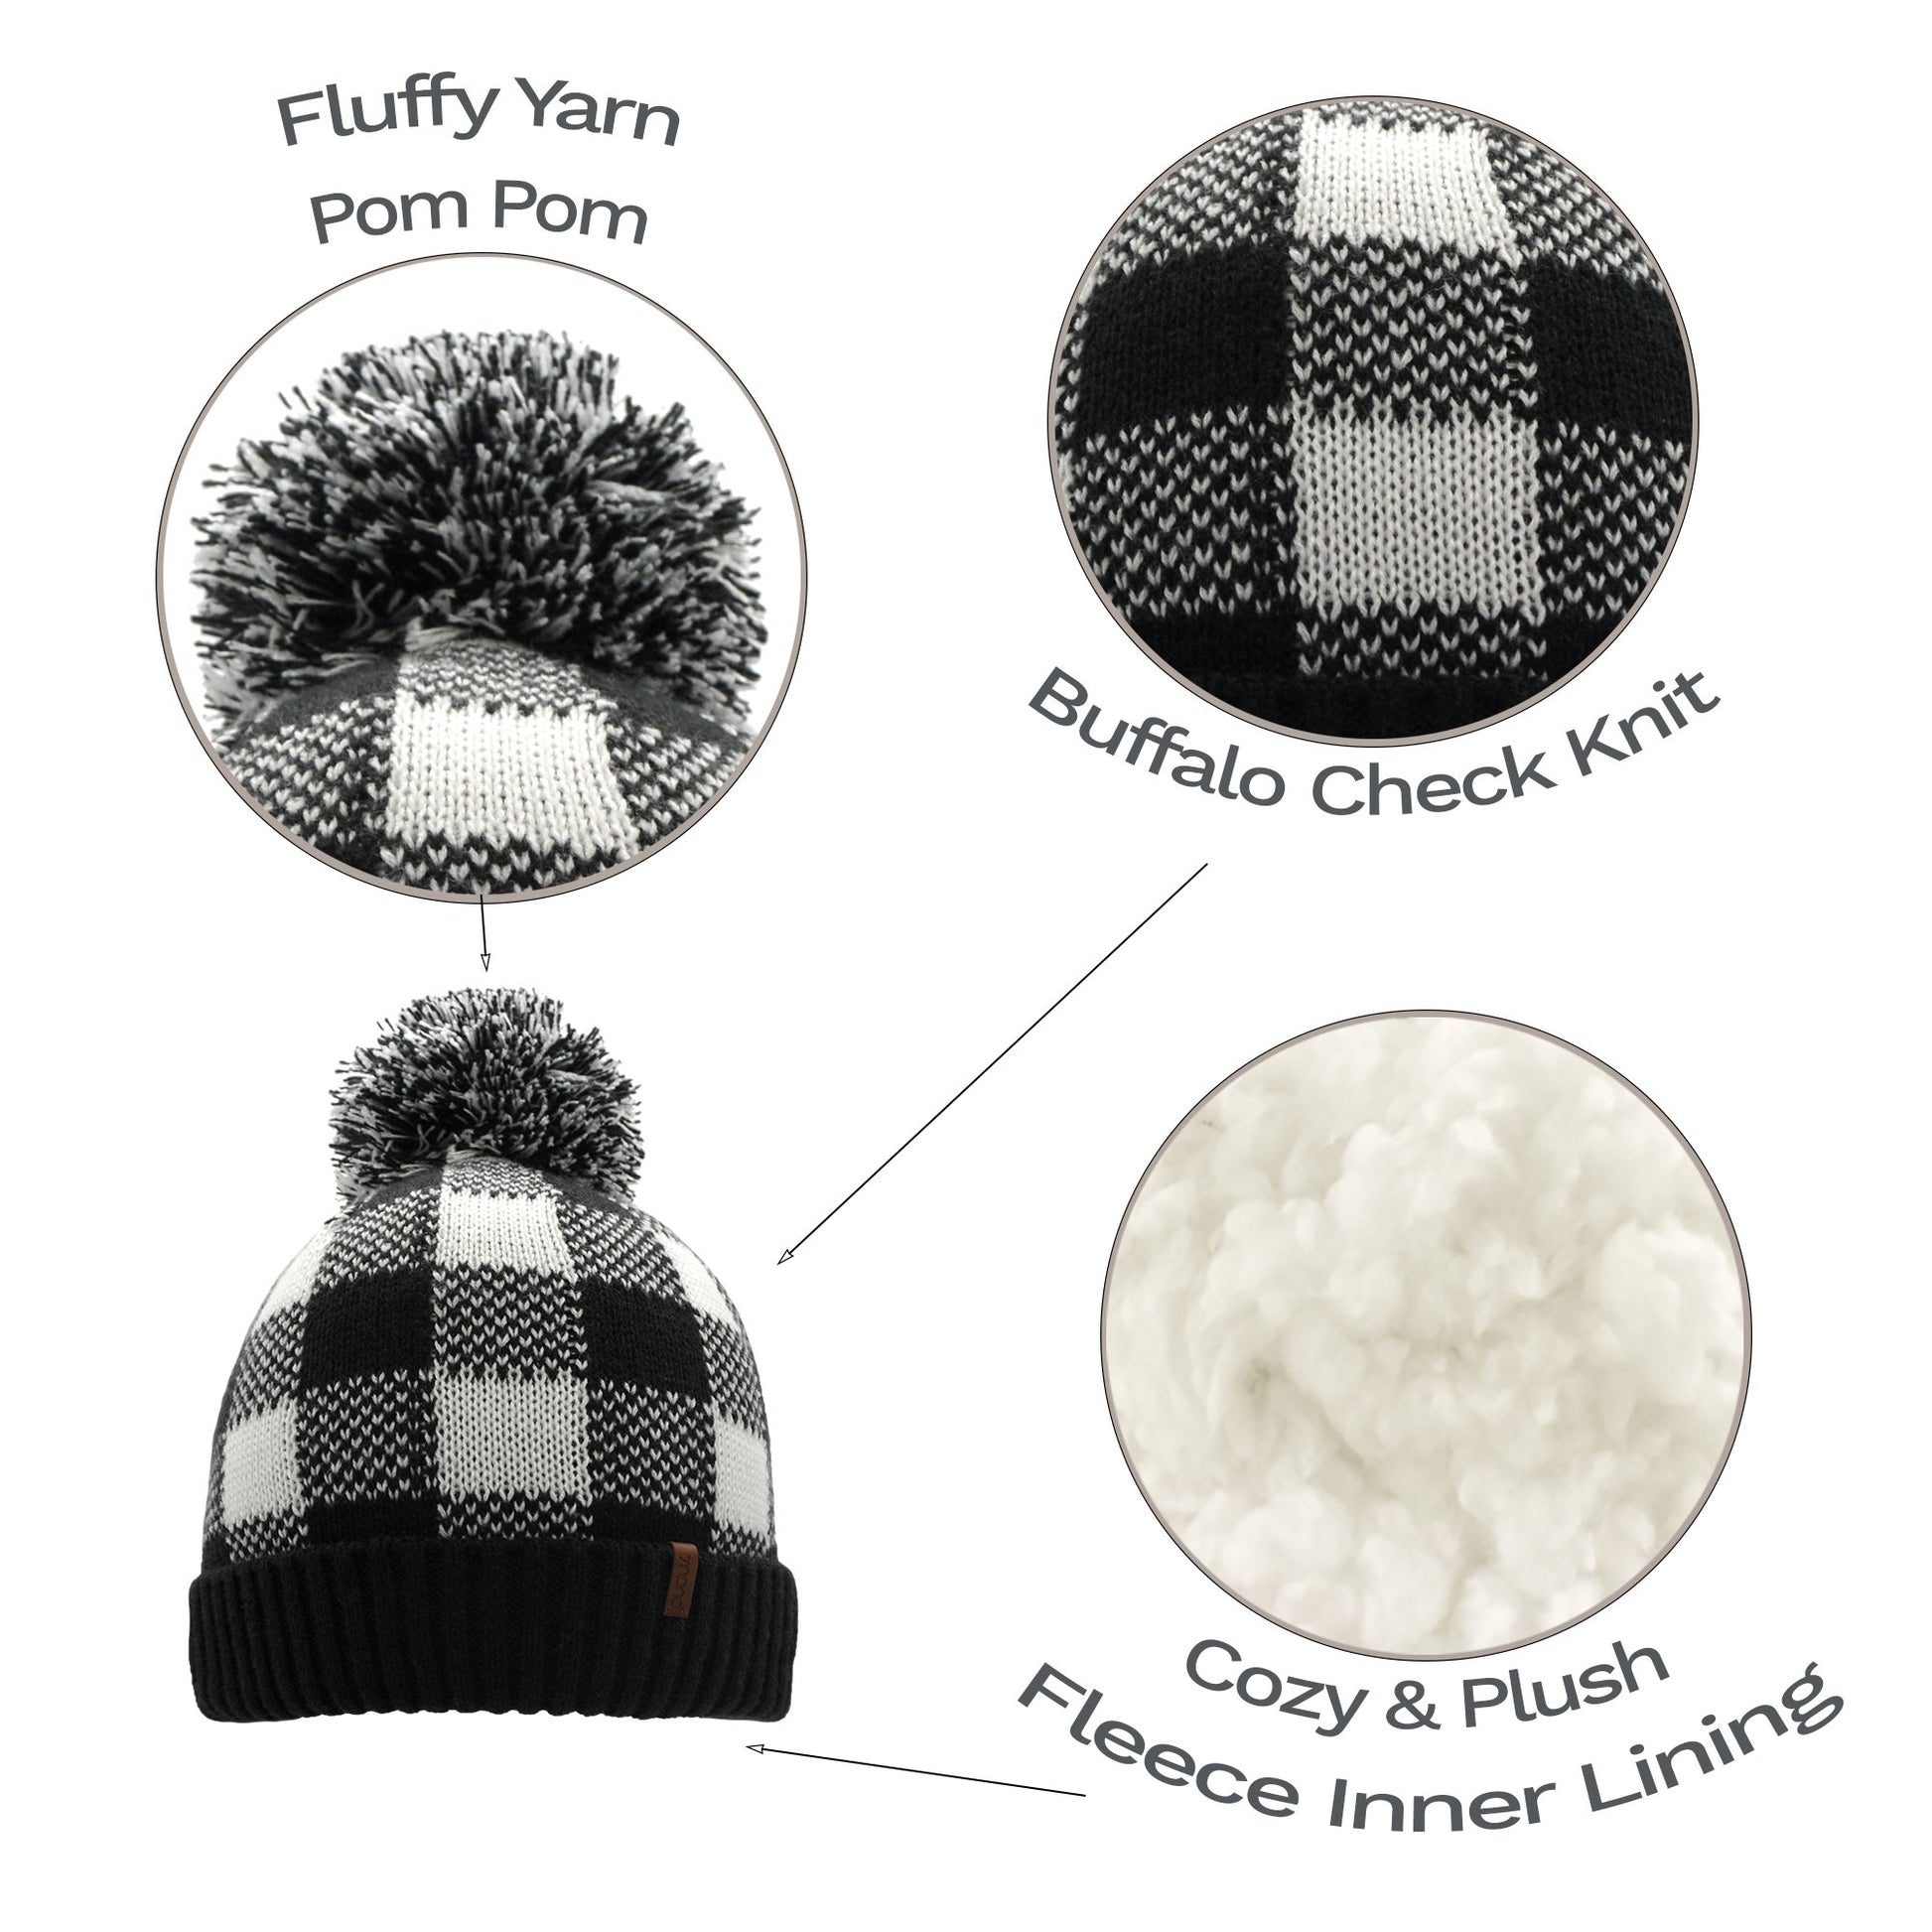 Lumberjack White Pom Pom Beanie Hat - Warm Winter Hat for Men & Women with Furry Sherpa Fleece Lining